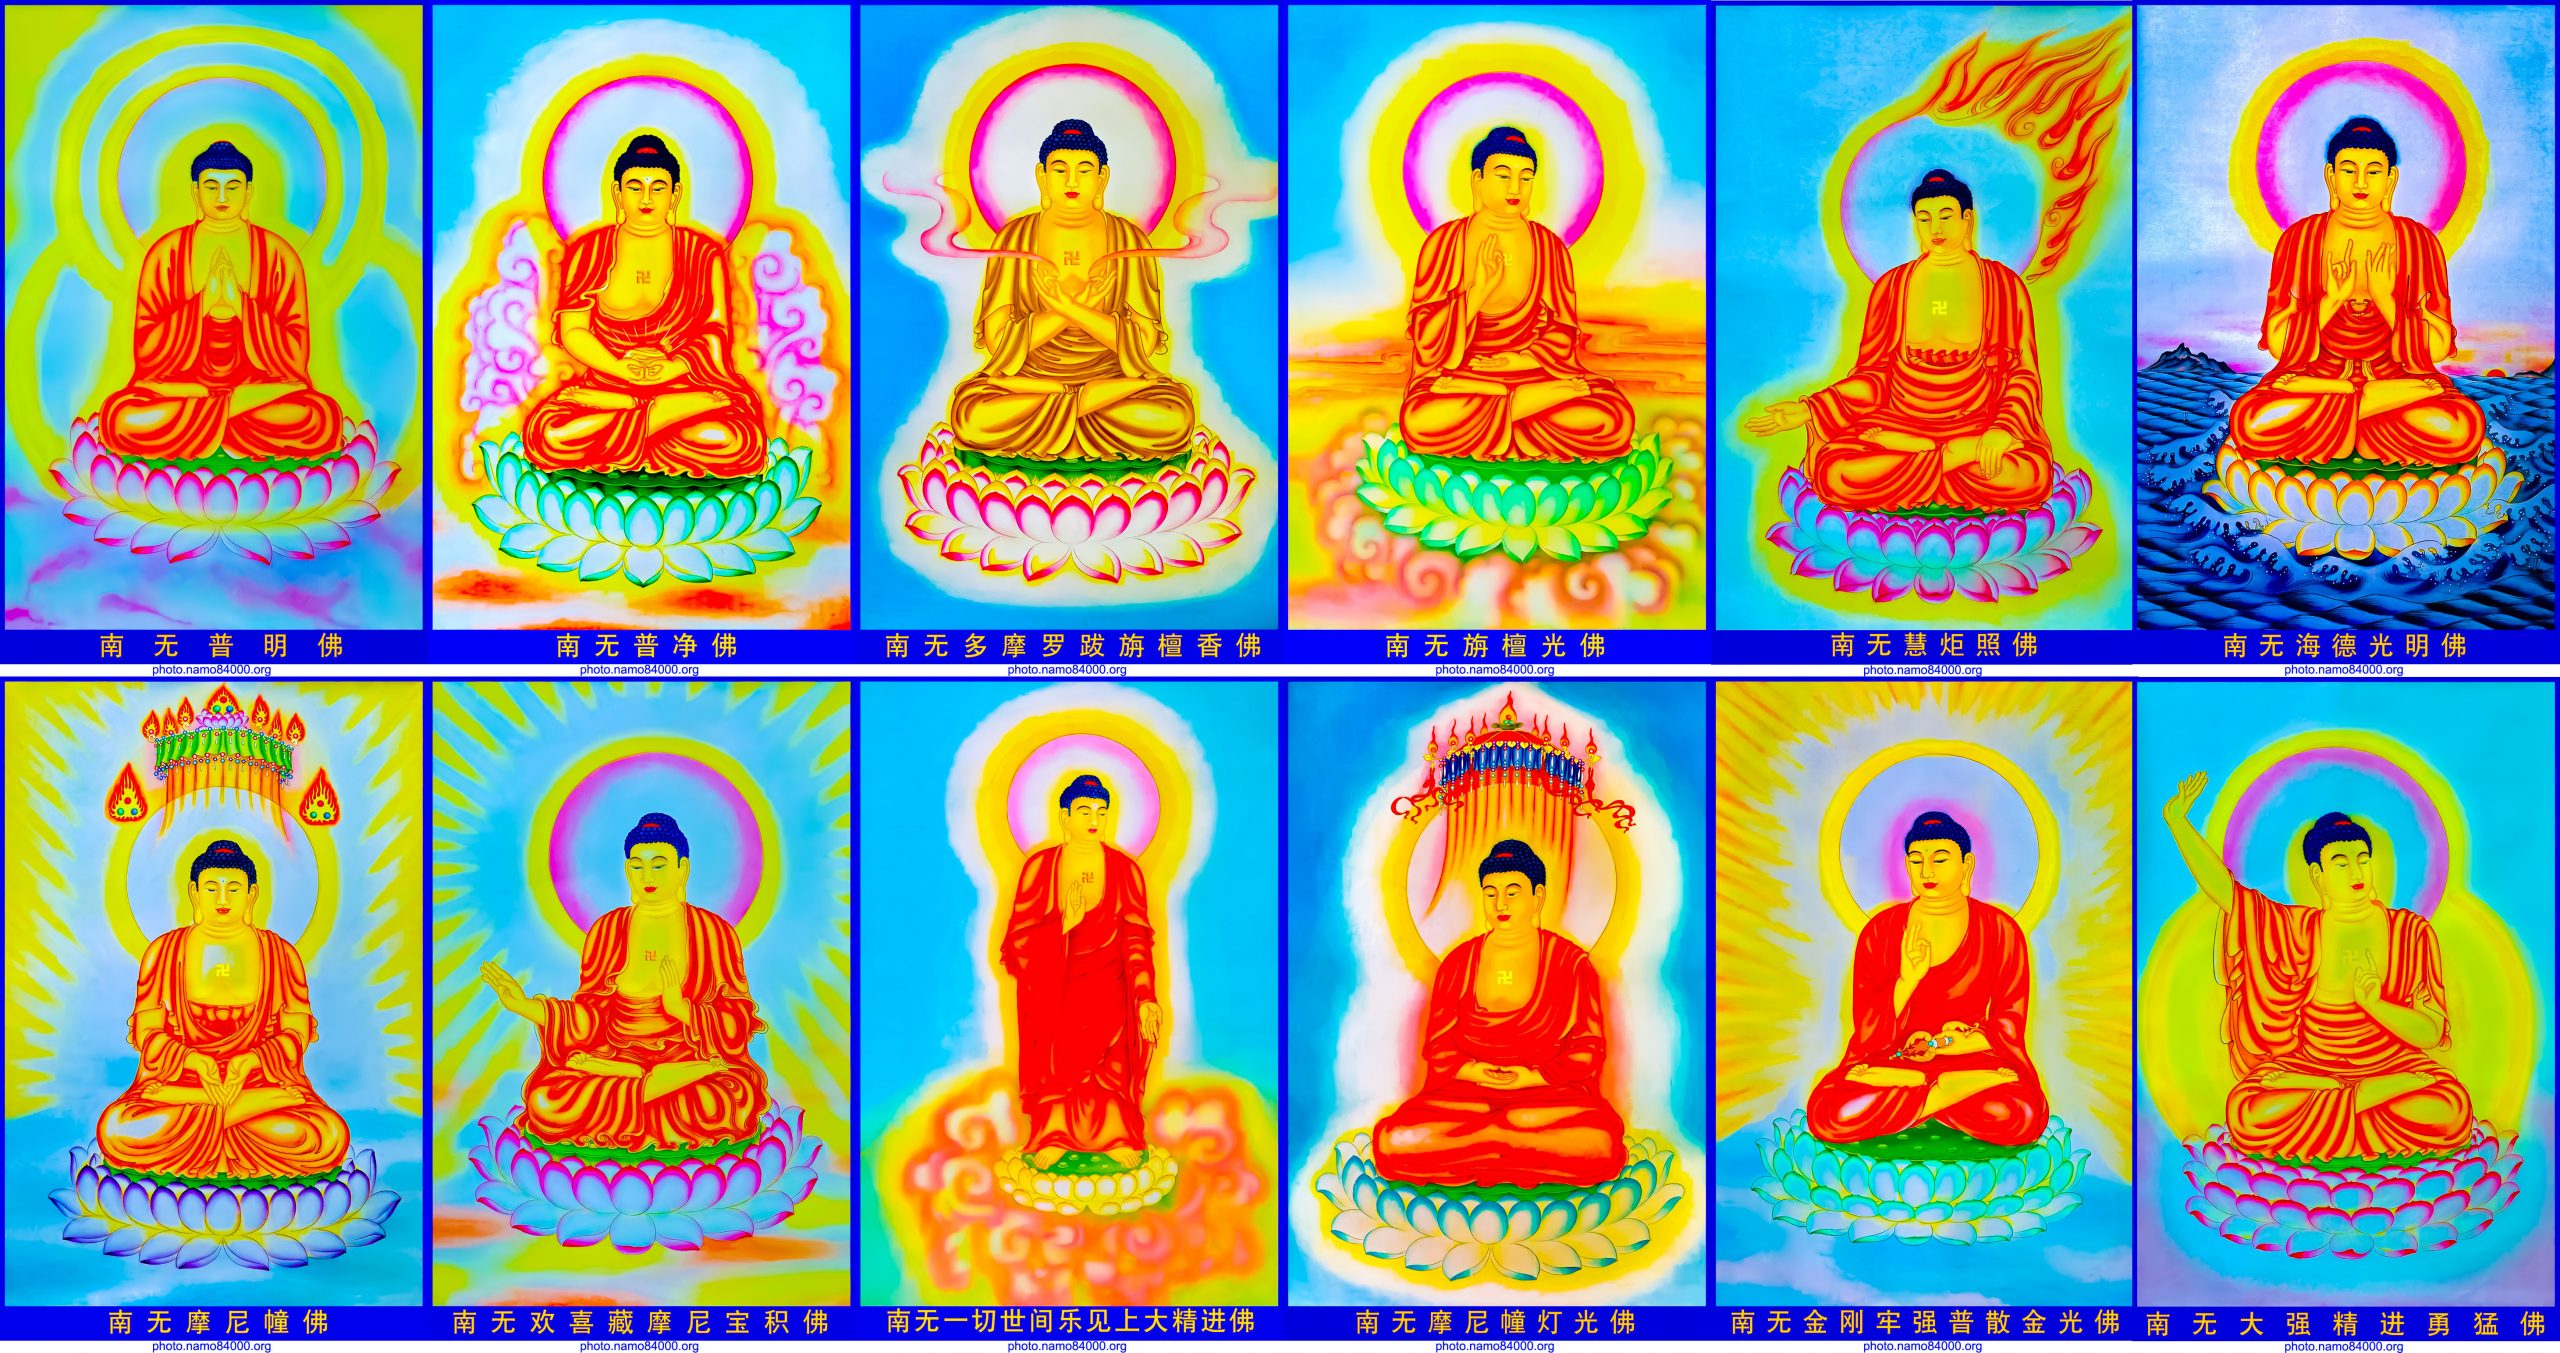 Tôn ảnh 88 Đức Phật phiên bản màu – Color images of 88 Buddhas